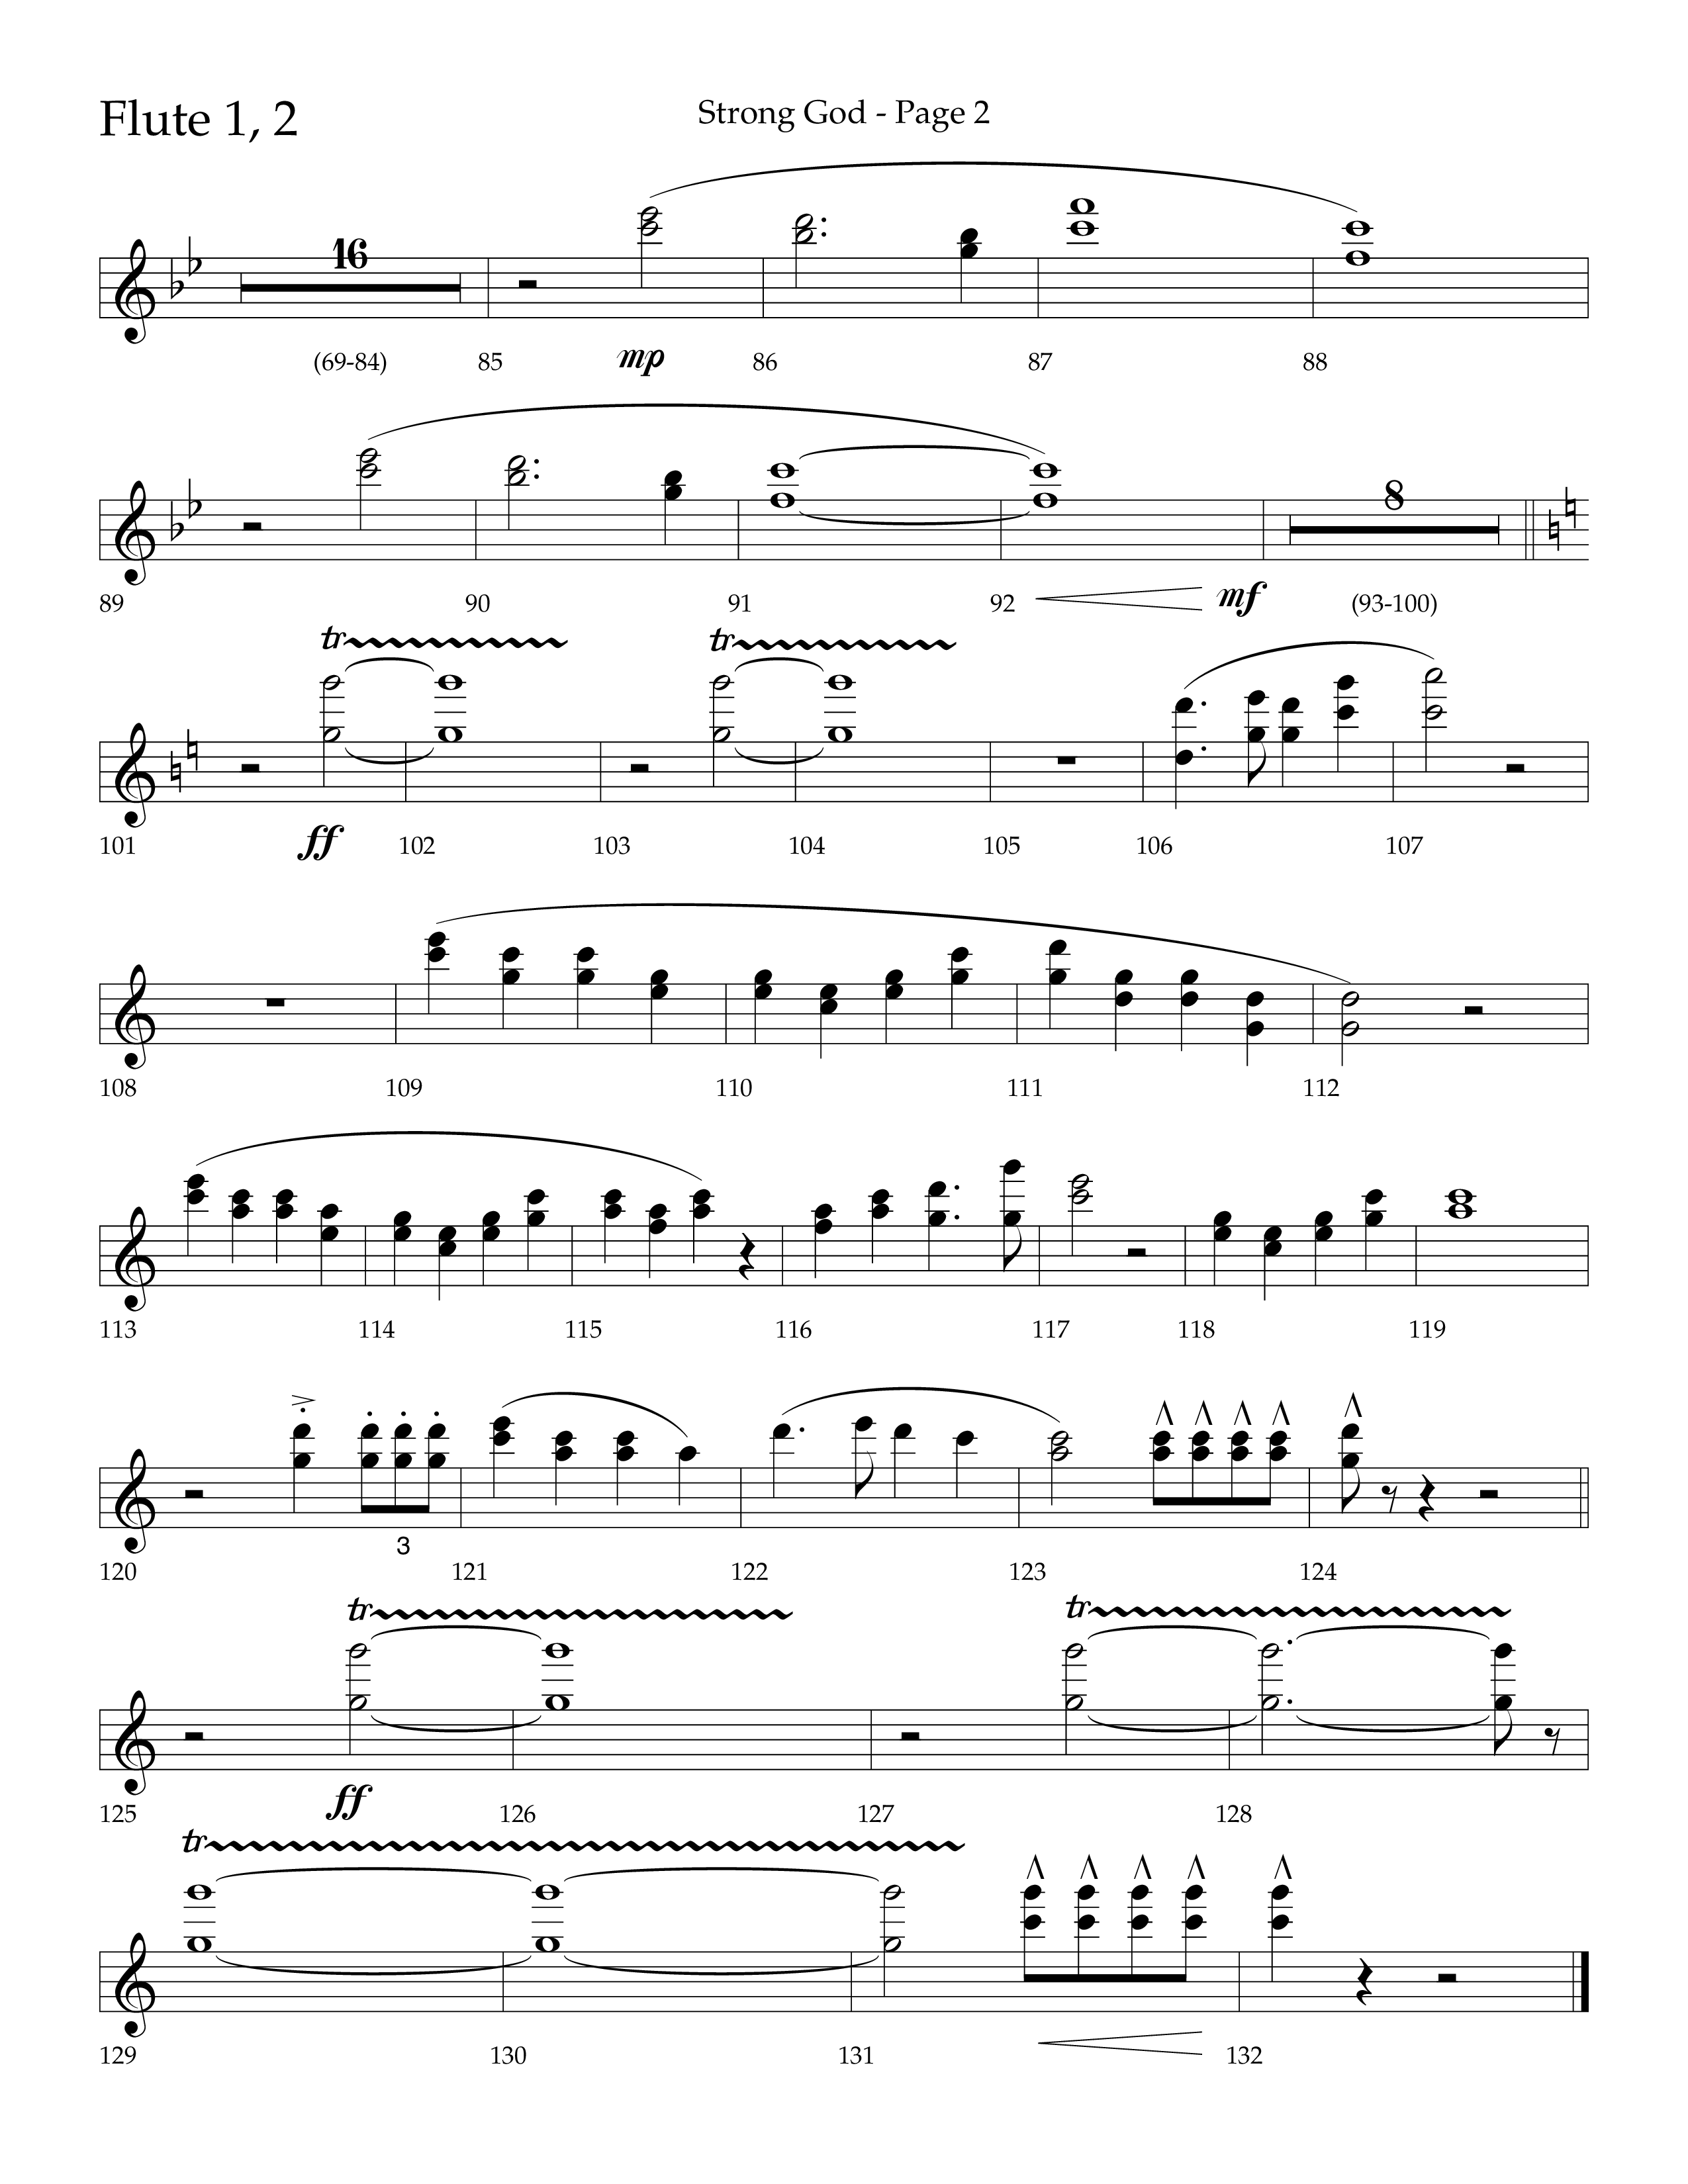 Strong God (Choral Anthem SATB) Flute 1/2 (Lifeway Choral / Arr. Craig Adams / Arr. Bruce Cokeroft / Orch. Craig Adams)